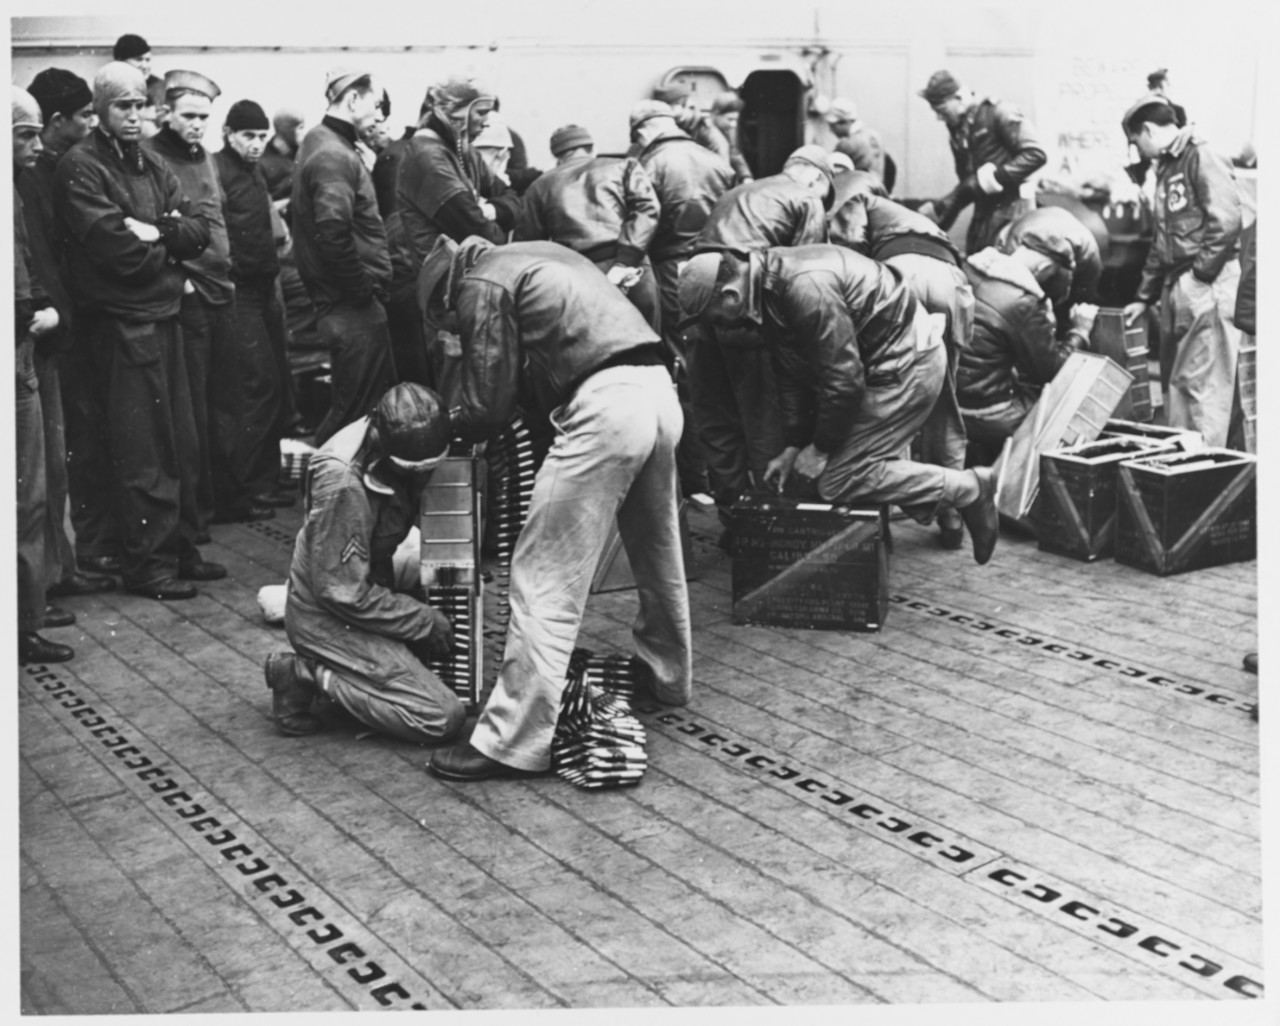 NH 53424 Doolittle Raid on Japan, 18 April 1942